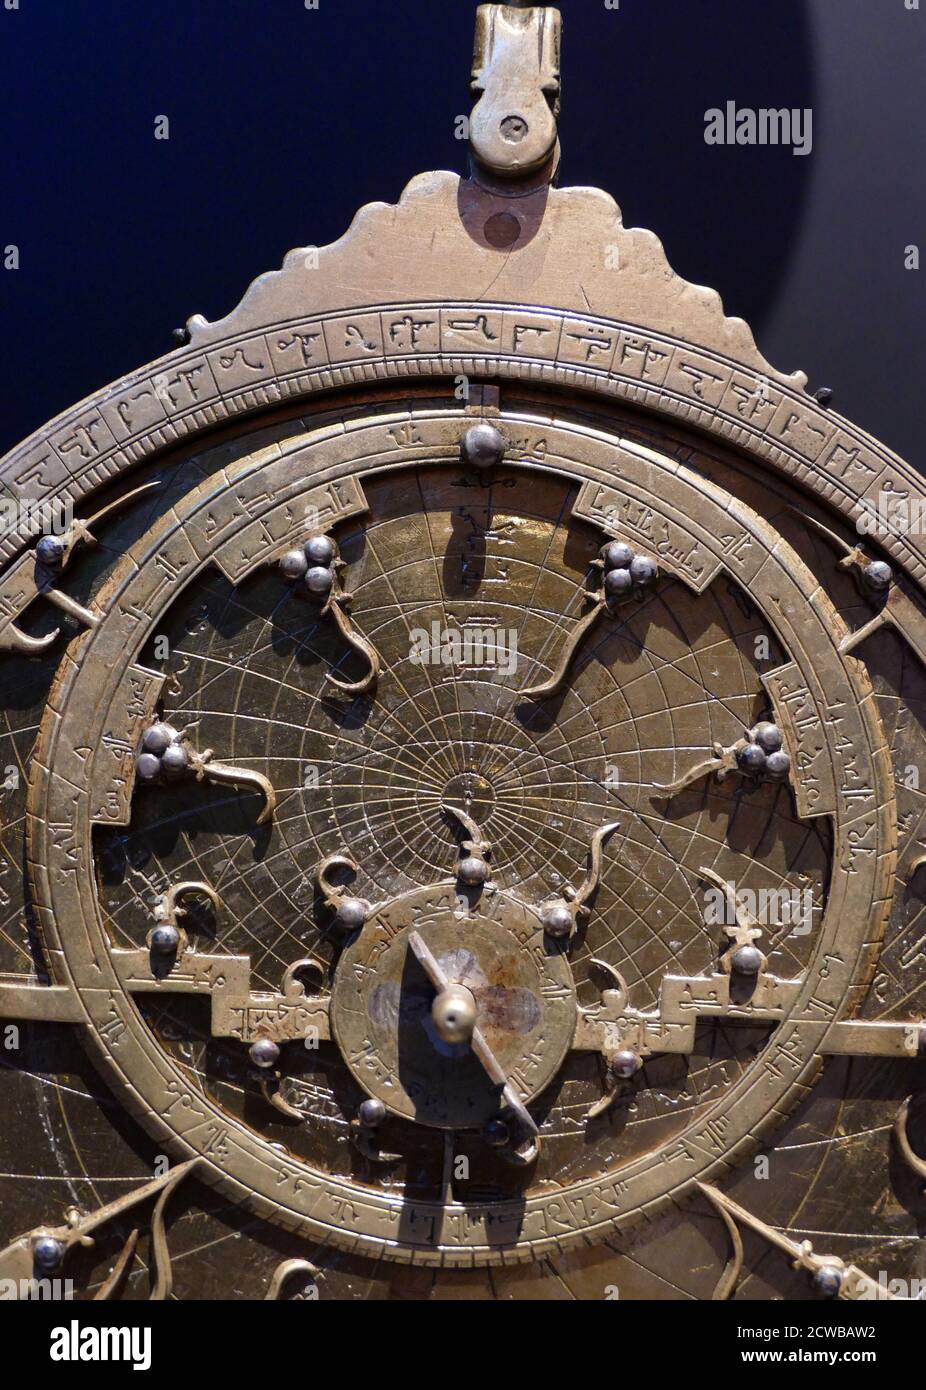 Planispherisches Astrolabium, Nordafrika, 18. Jahrhundert. Silber. Ein Astrolabium war ein ausgeklügeltes Neigungsmesser, das von Astronomen und Navigatoren historisch verwendet wurde, um die Höhe über dem Horizont eines Himmelskörpers zu messen, Tag oder Nacht. Es kann verwendet werden, um Sterne oder Planeten zu identifizieren, um lokalen Breitengrad gegebenen lokalen Zeit zu bestimmen, zu vermessen, oder zu triangulieren. Es wurde in der klassischen Antike, dem islamischen Goldenen Zeitalter, dem europäischen Mittelalter und dem Zeitalter der Entdeckung für all diese Zwecke verwendet. Stockfoto